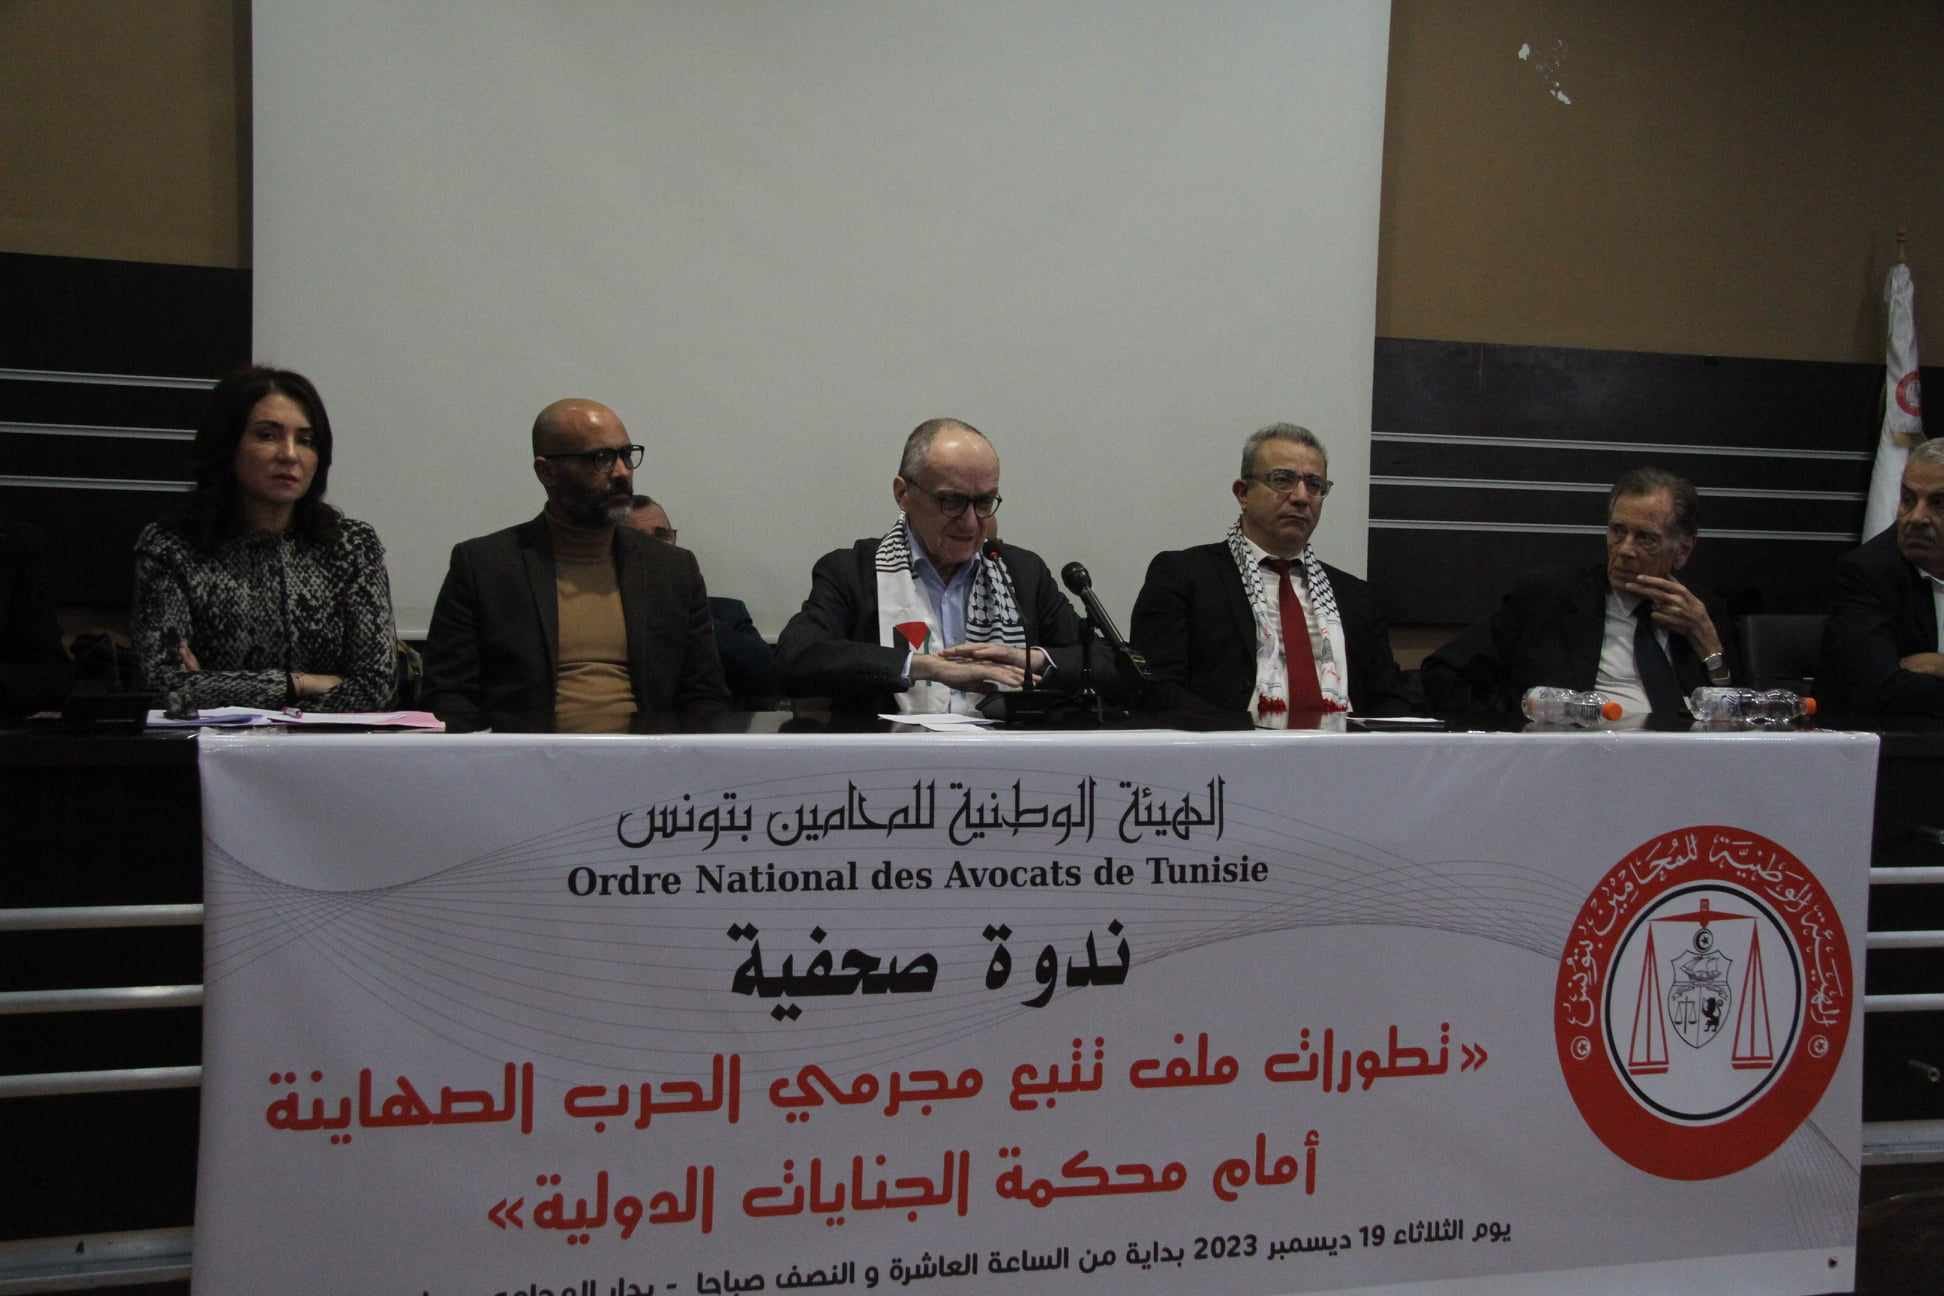   زياد دبار: نقابة الصحفيين تتوجه لمحكمة الجنايات الدولية على خلفية مقتل أكثر من مائة صحفي وعامل في القطاع بفلسطين